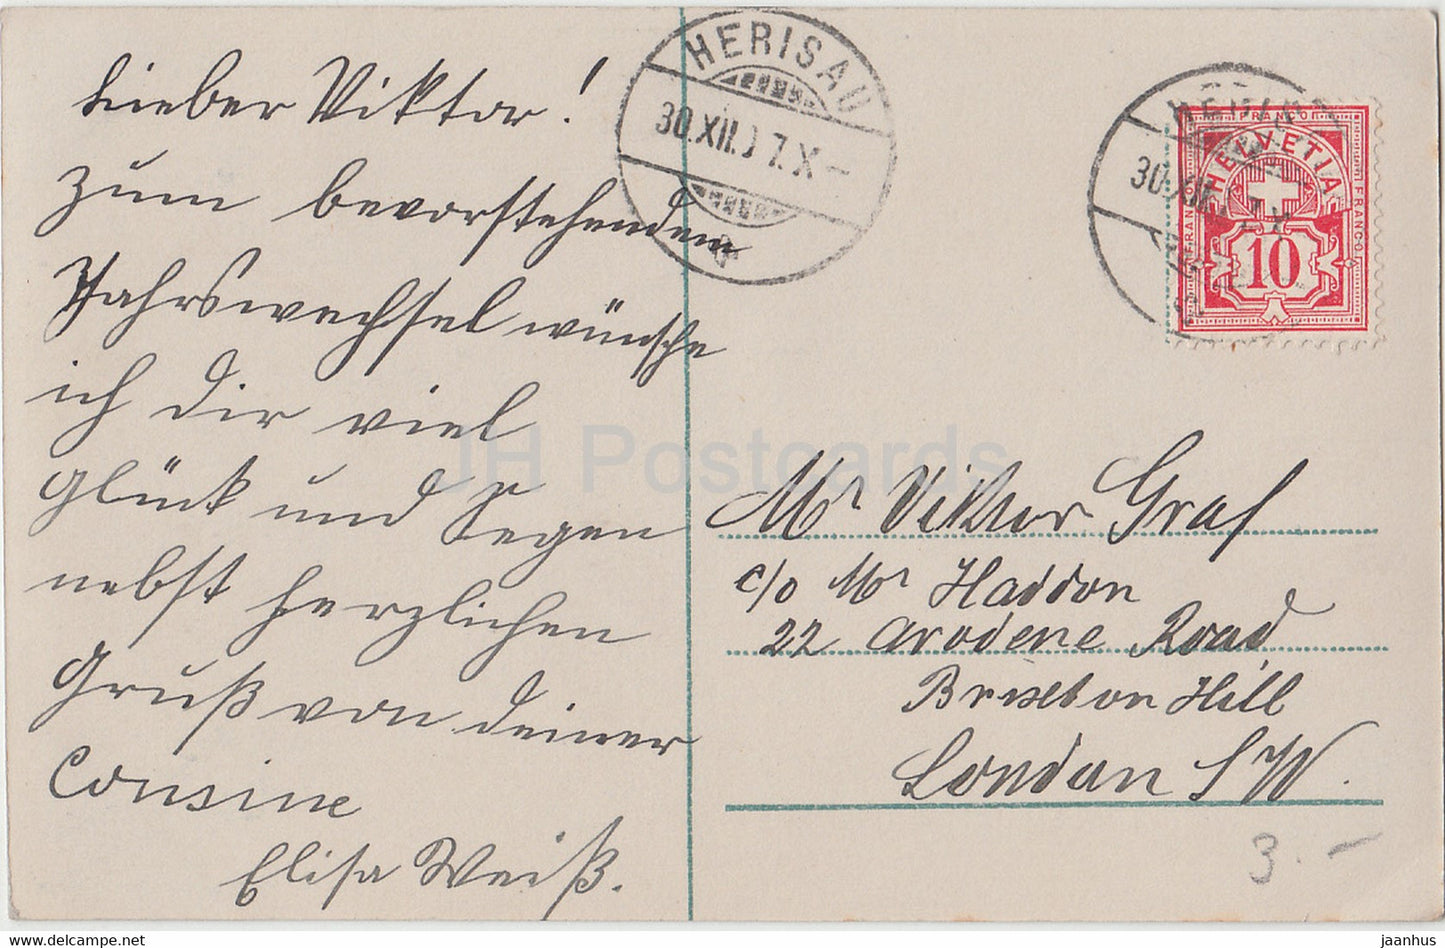 Neujahrsgrußkarte - Herzlichen Glückwunsch zum Neuen Jahre - Pferdeschlitten - alte Postkarte - 1907 - Deutschland - gebraucht